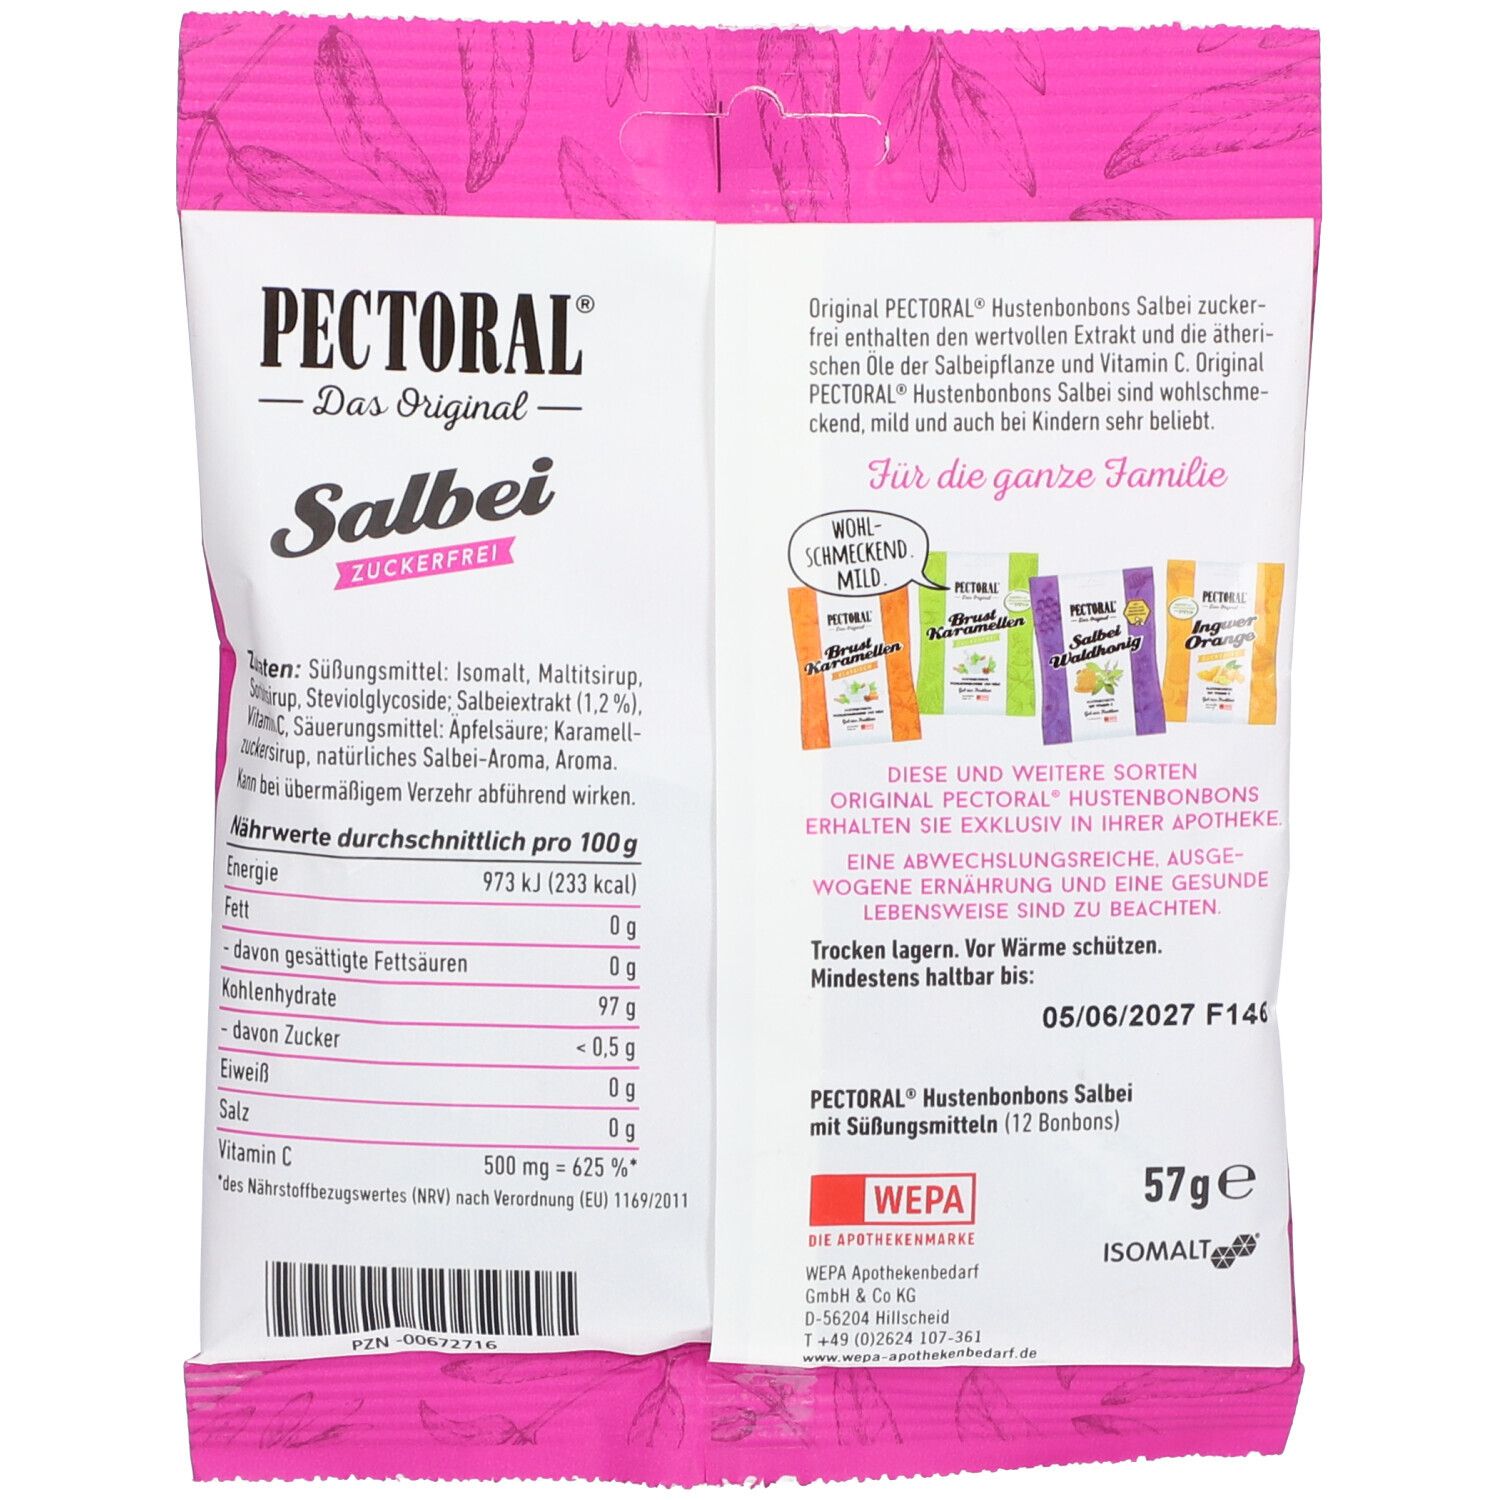 Original PECTORAL® Hals-Karamellen Salbei zuckerfrei